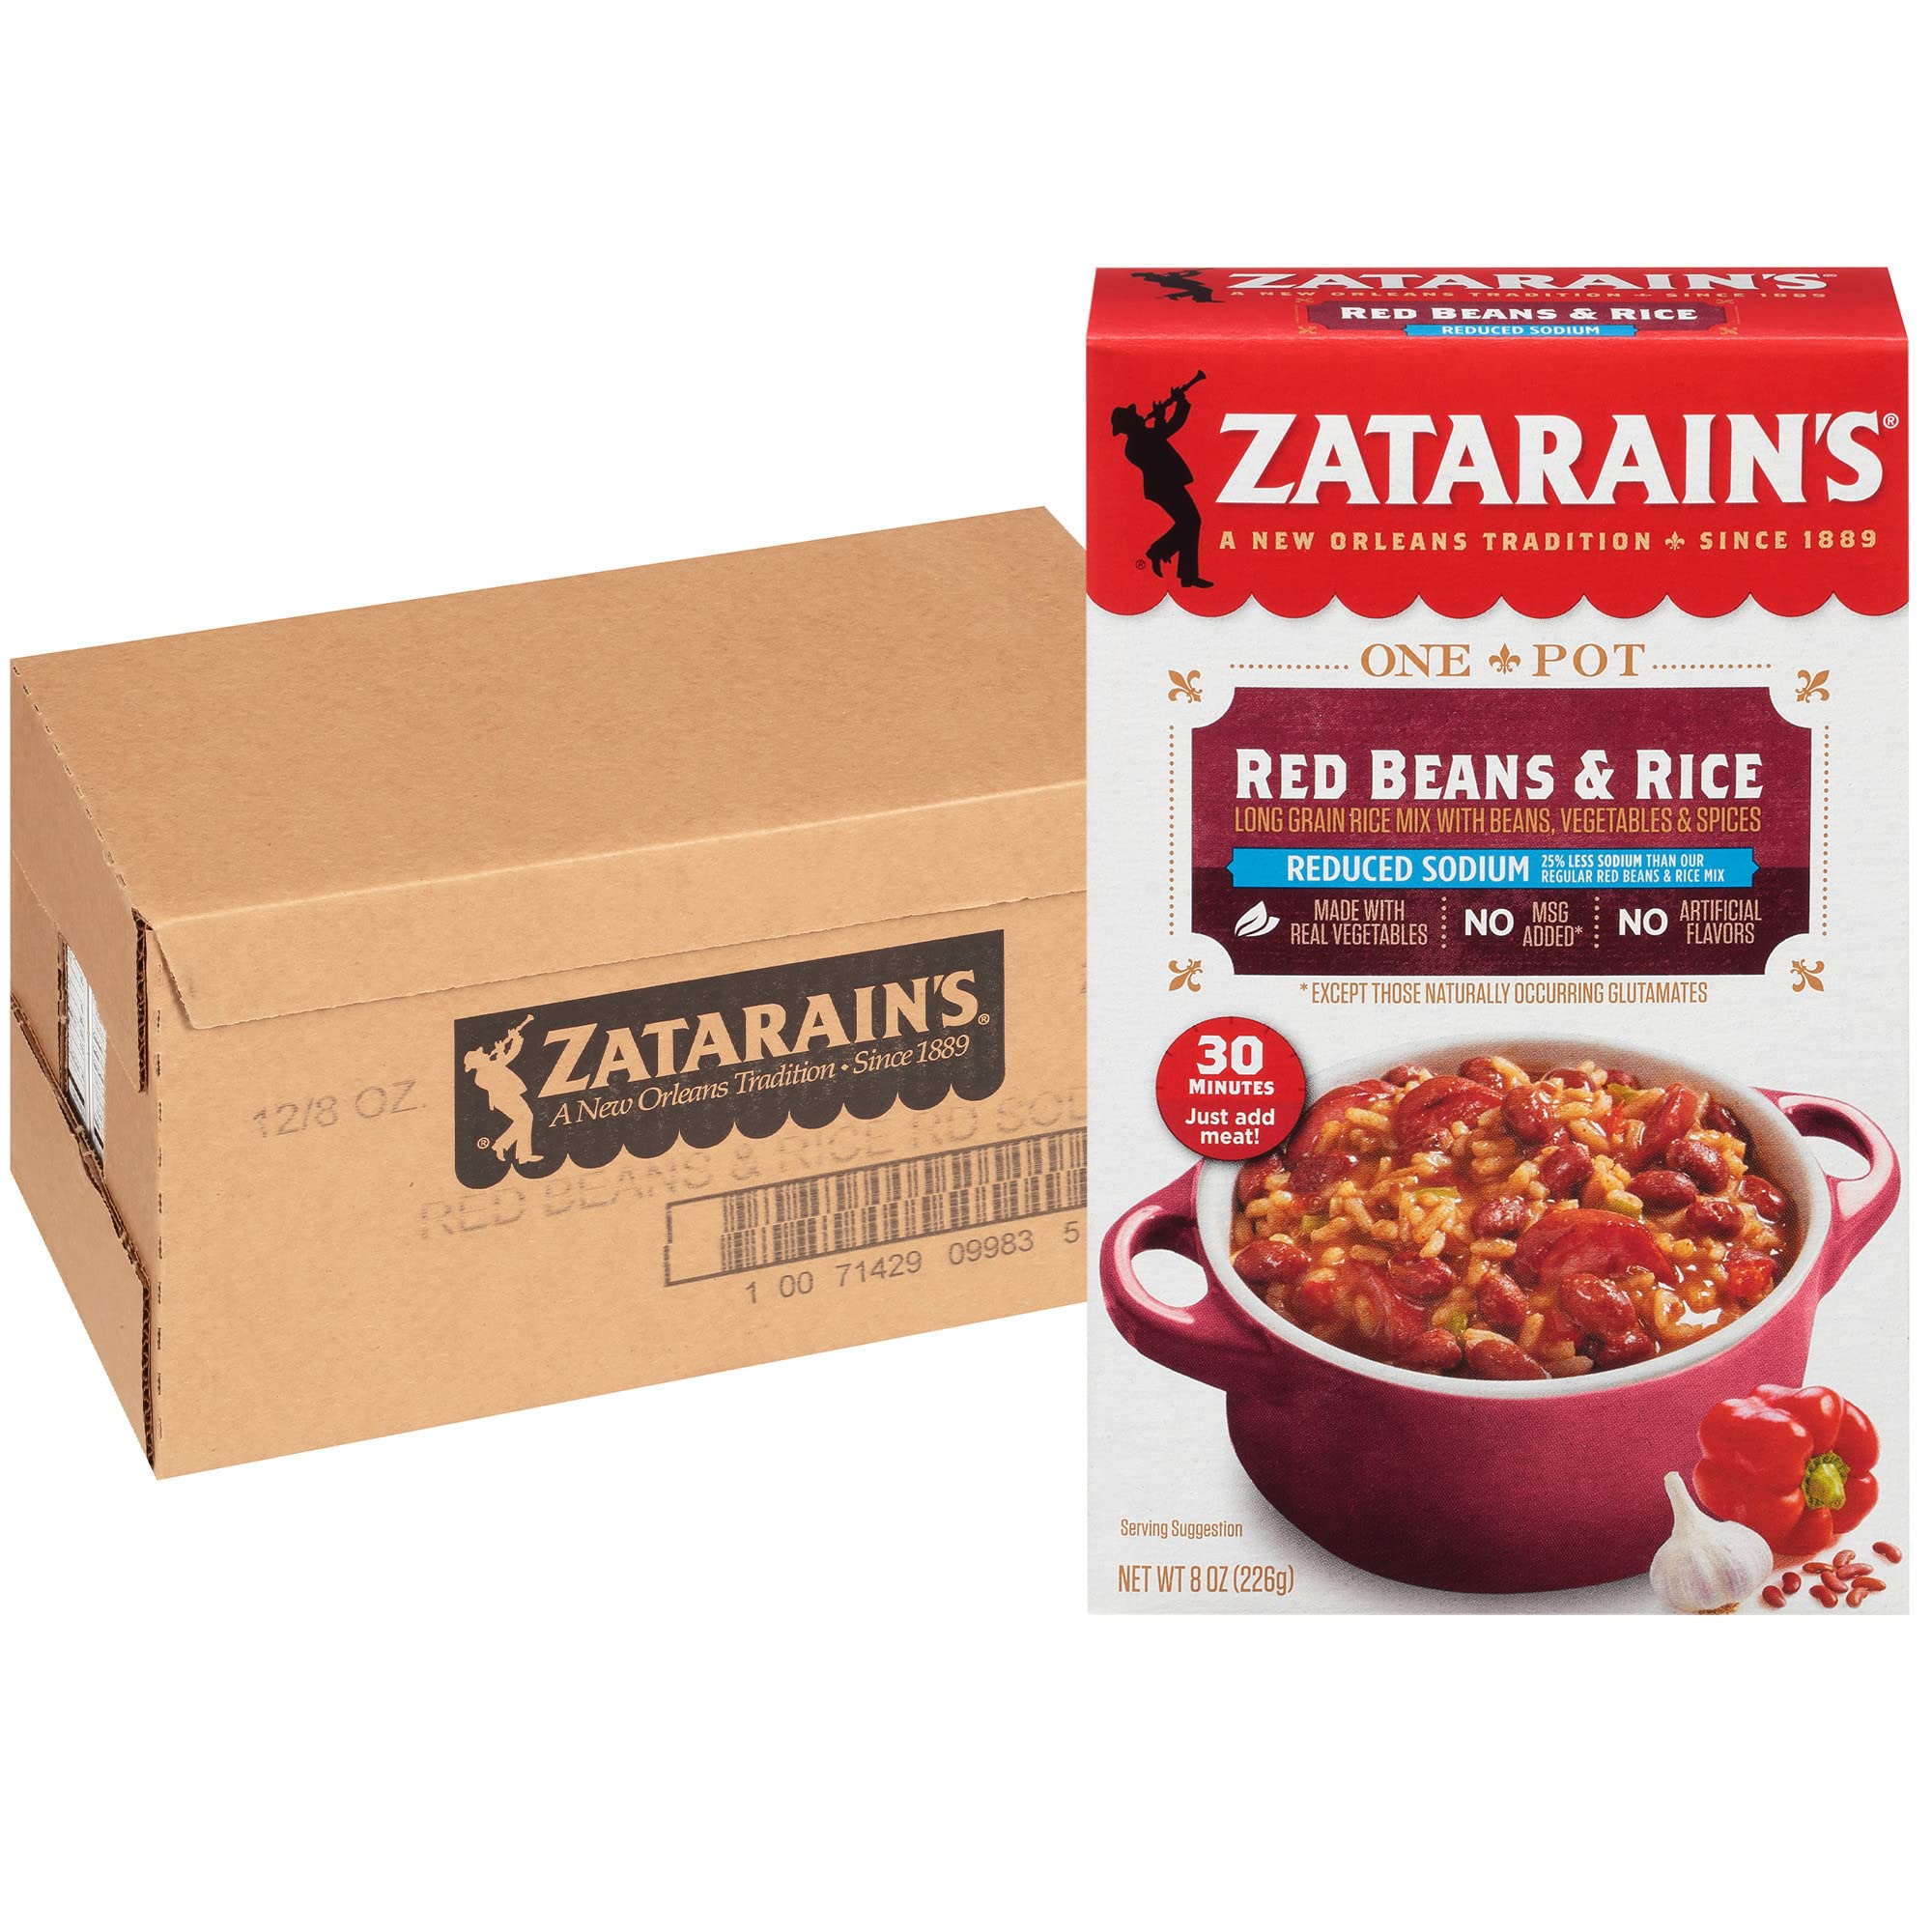 Red beans & rice - Zatarain's - 226 g